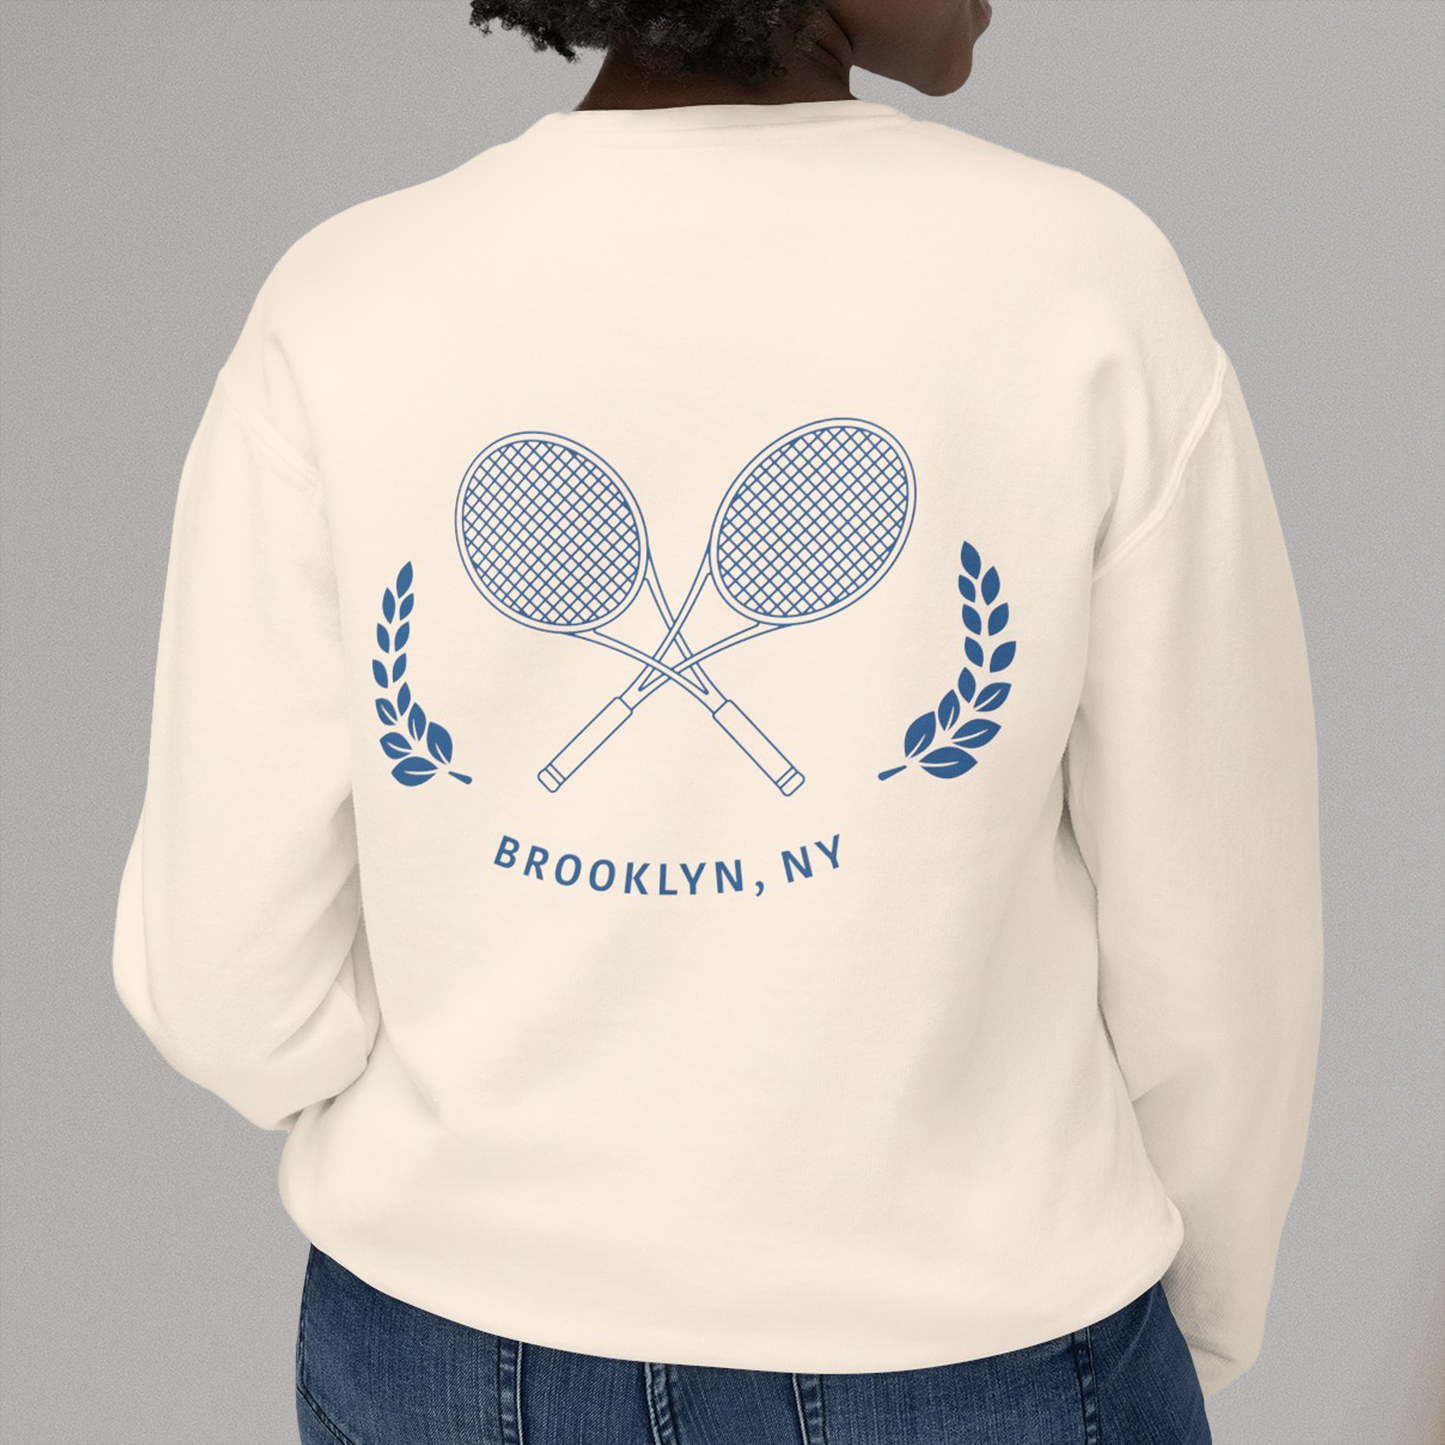 Brooklyn Tennis Crest Sweatshirt, 100% Cotton